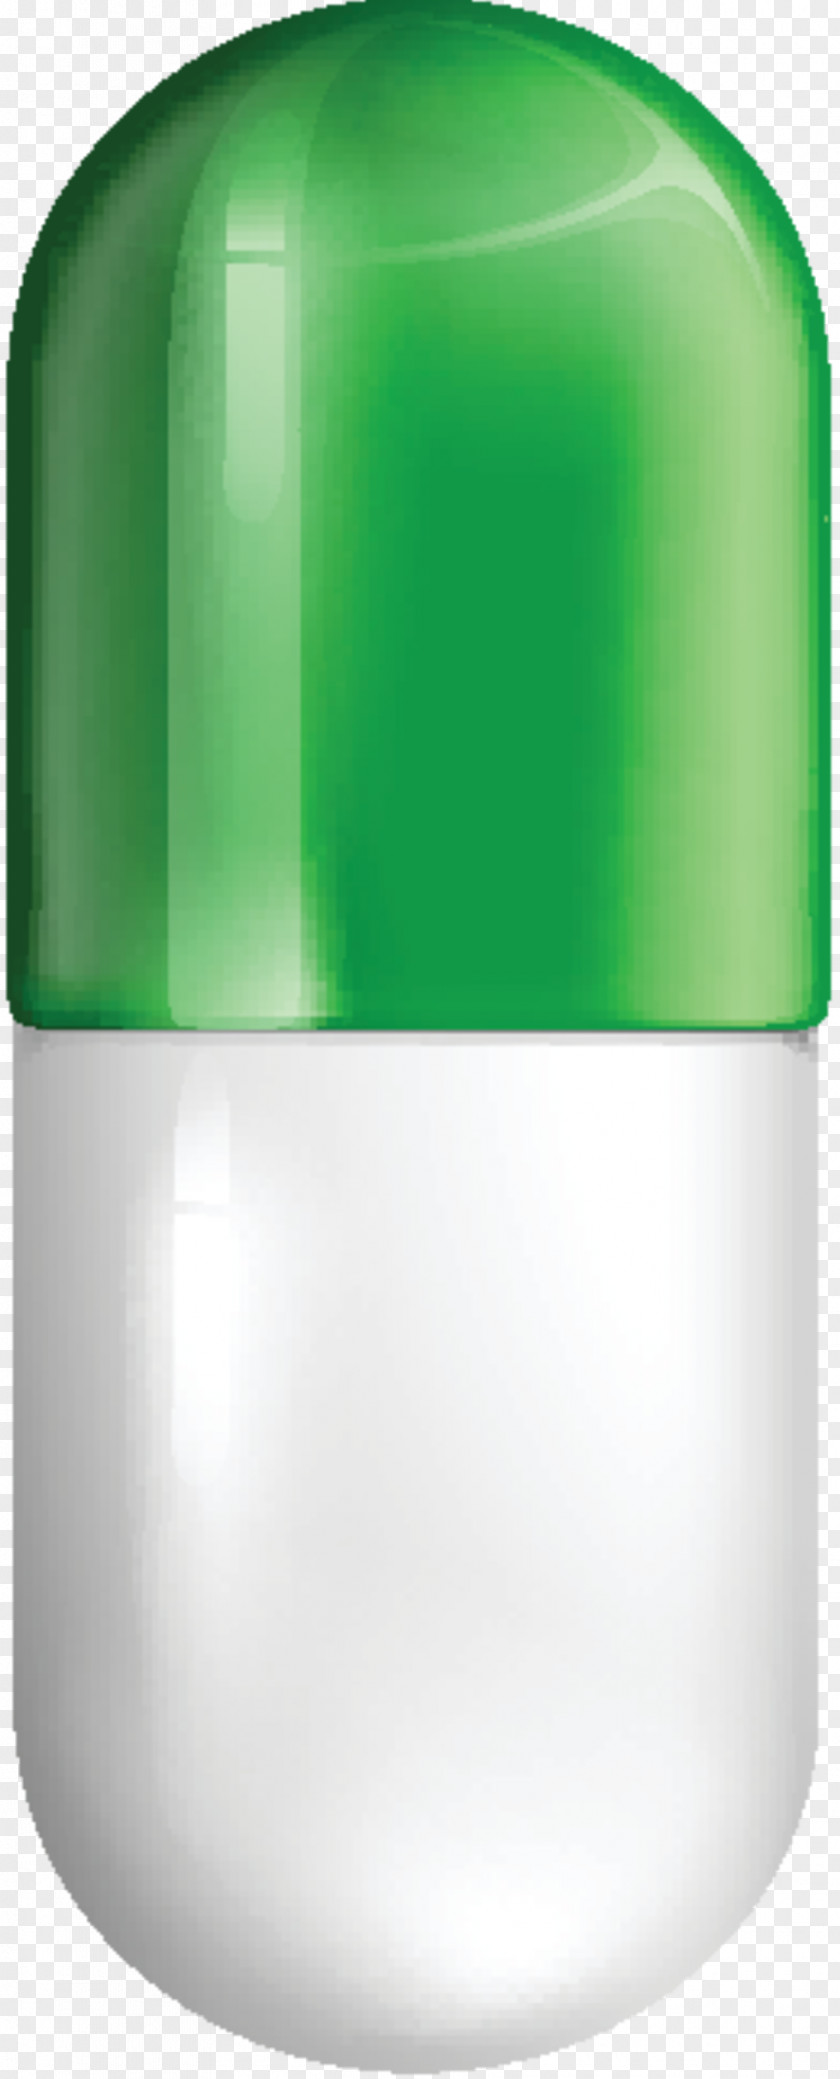 Bottle Product Design Cylinder Plastic PNG